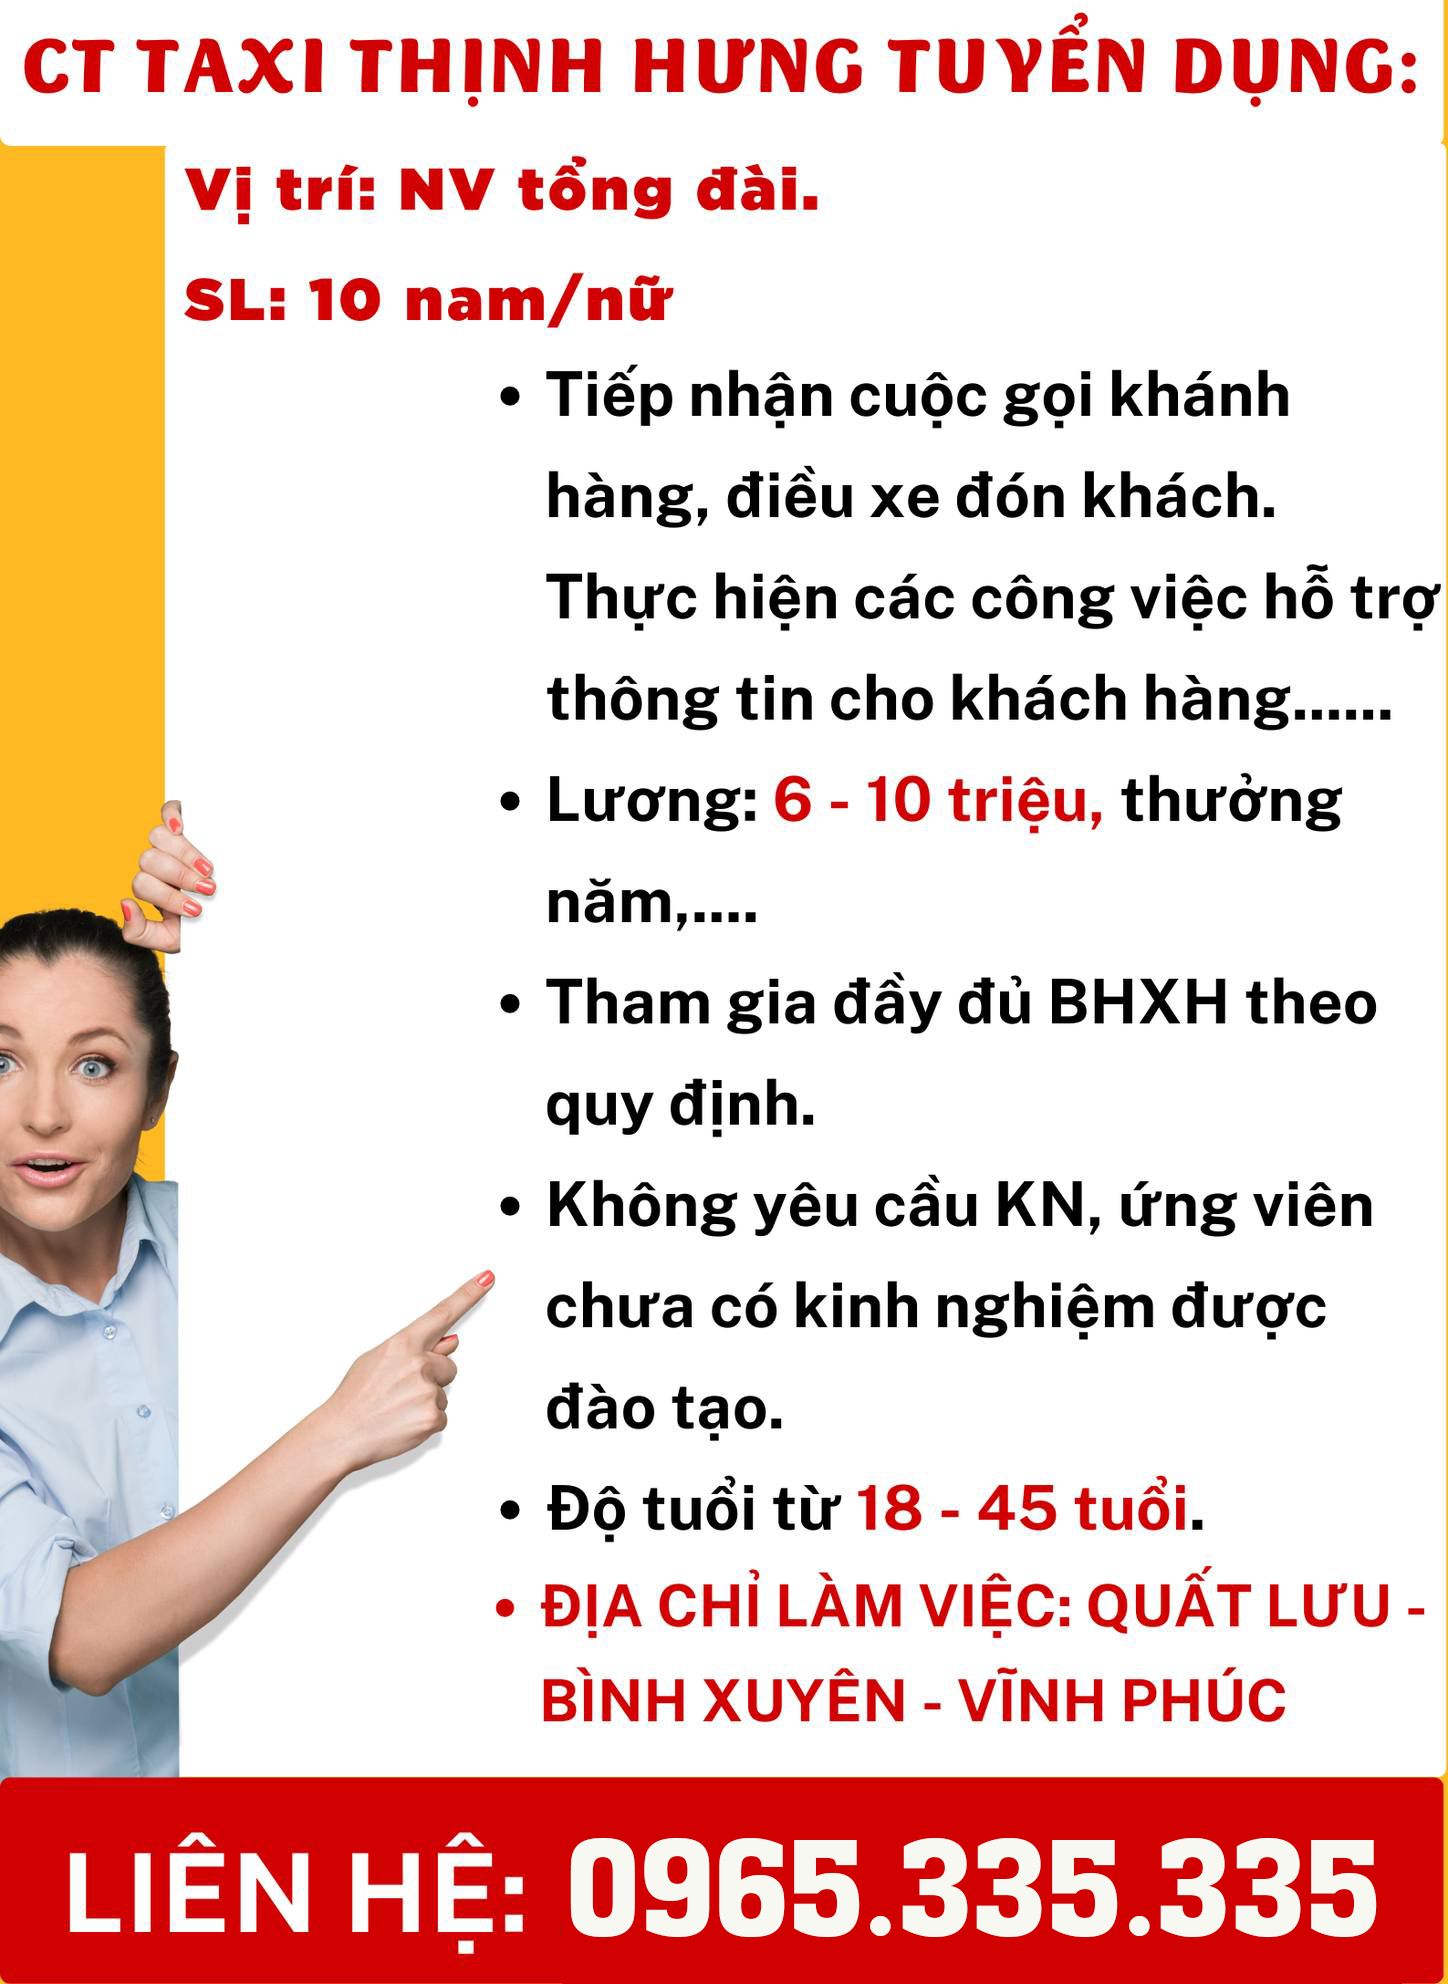 Tuyển dụng nhân viên tổng đài taxi Thịnh Hưng